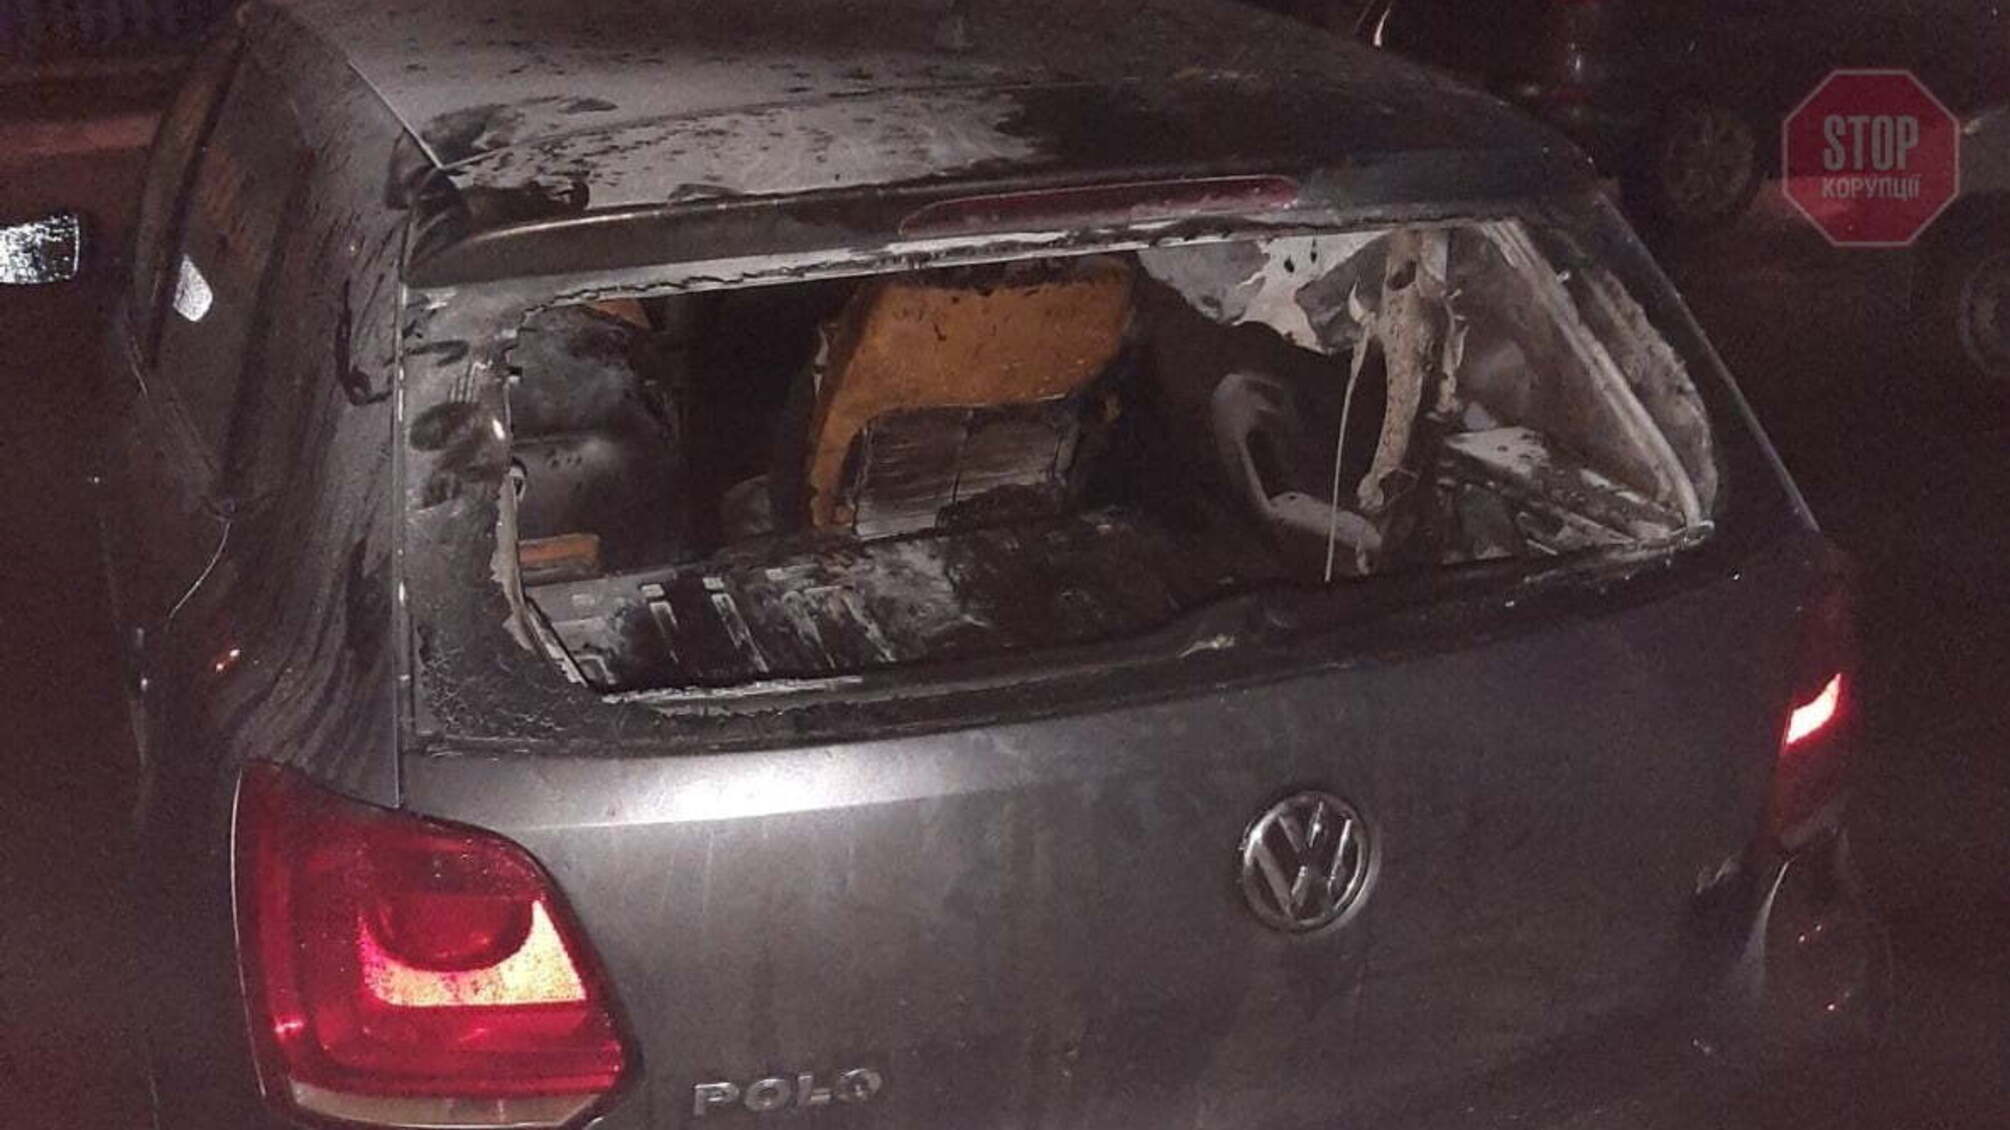 У Чернігові через феєрверк загорівся автомобіль (фото)